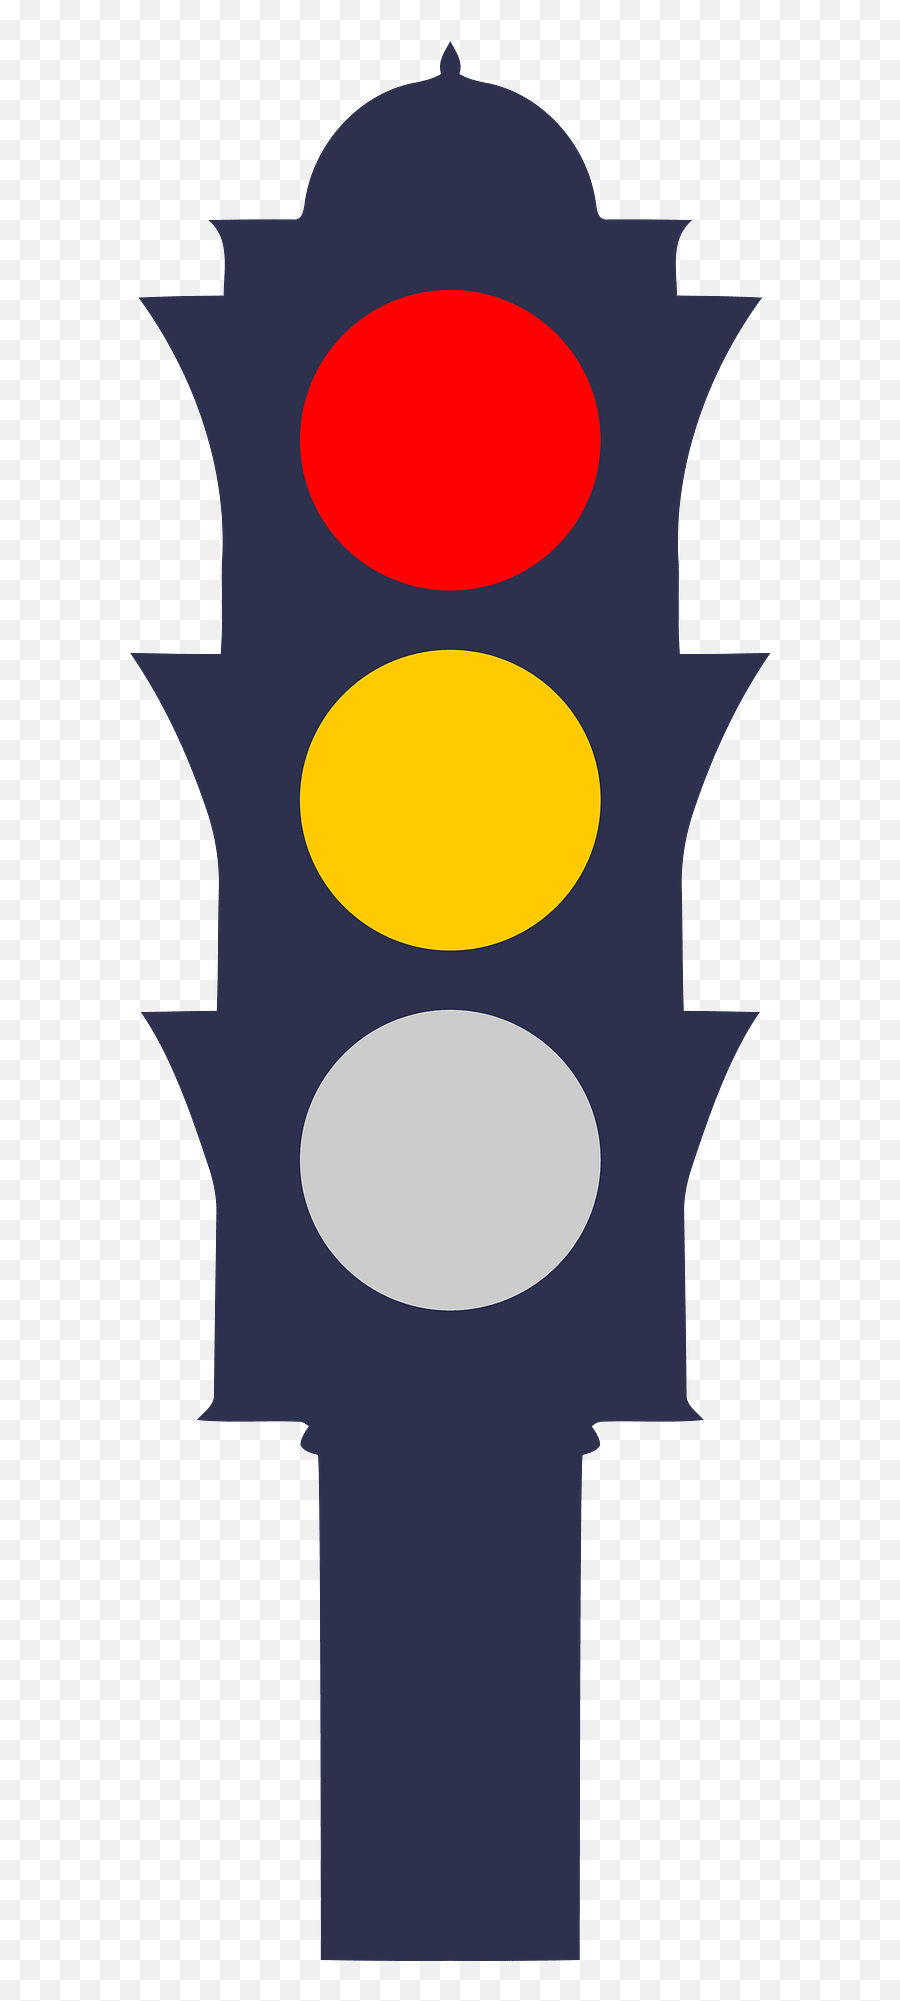 Traffic Light - Traffic Green Light Clip Art Emoji,Traffic Light Caution Sign Emoji